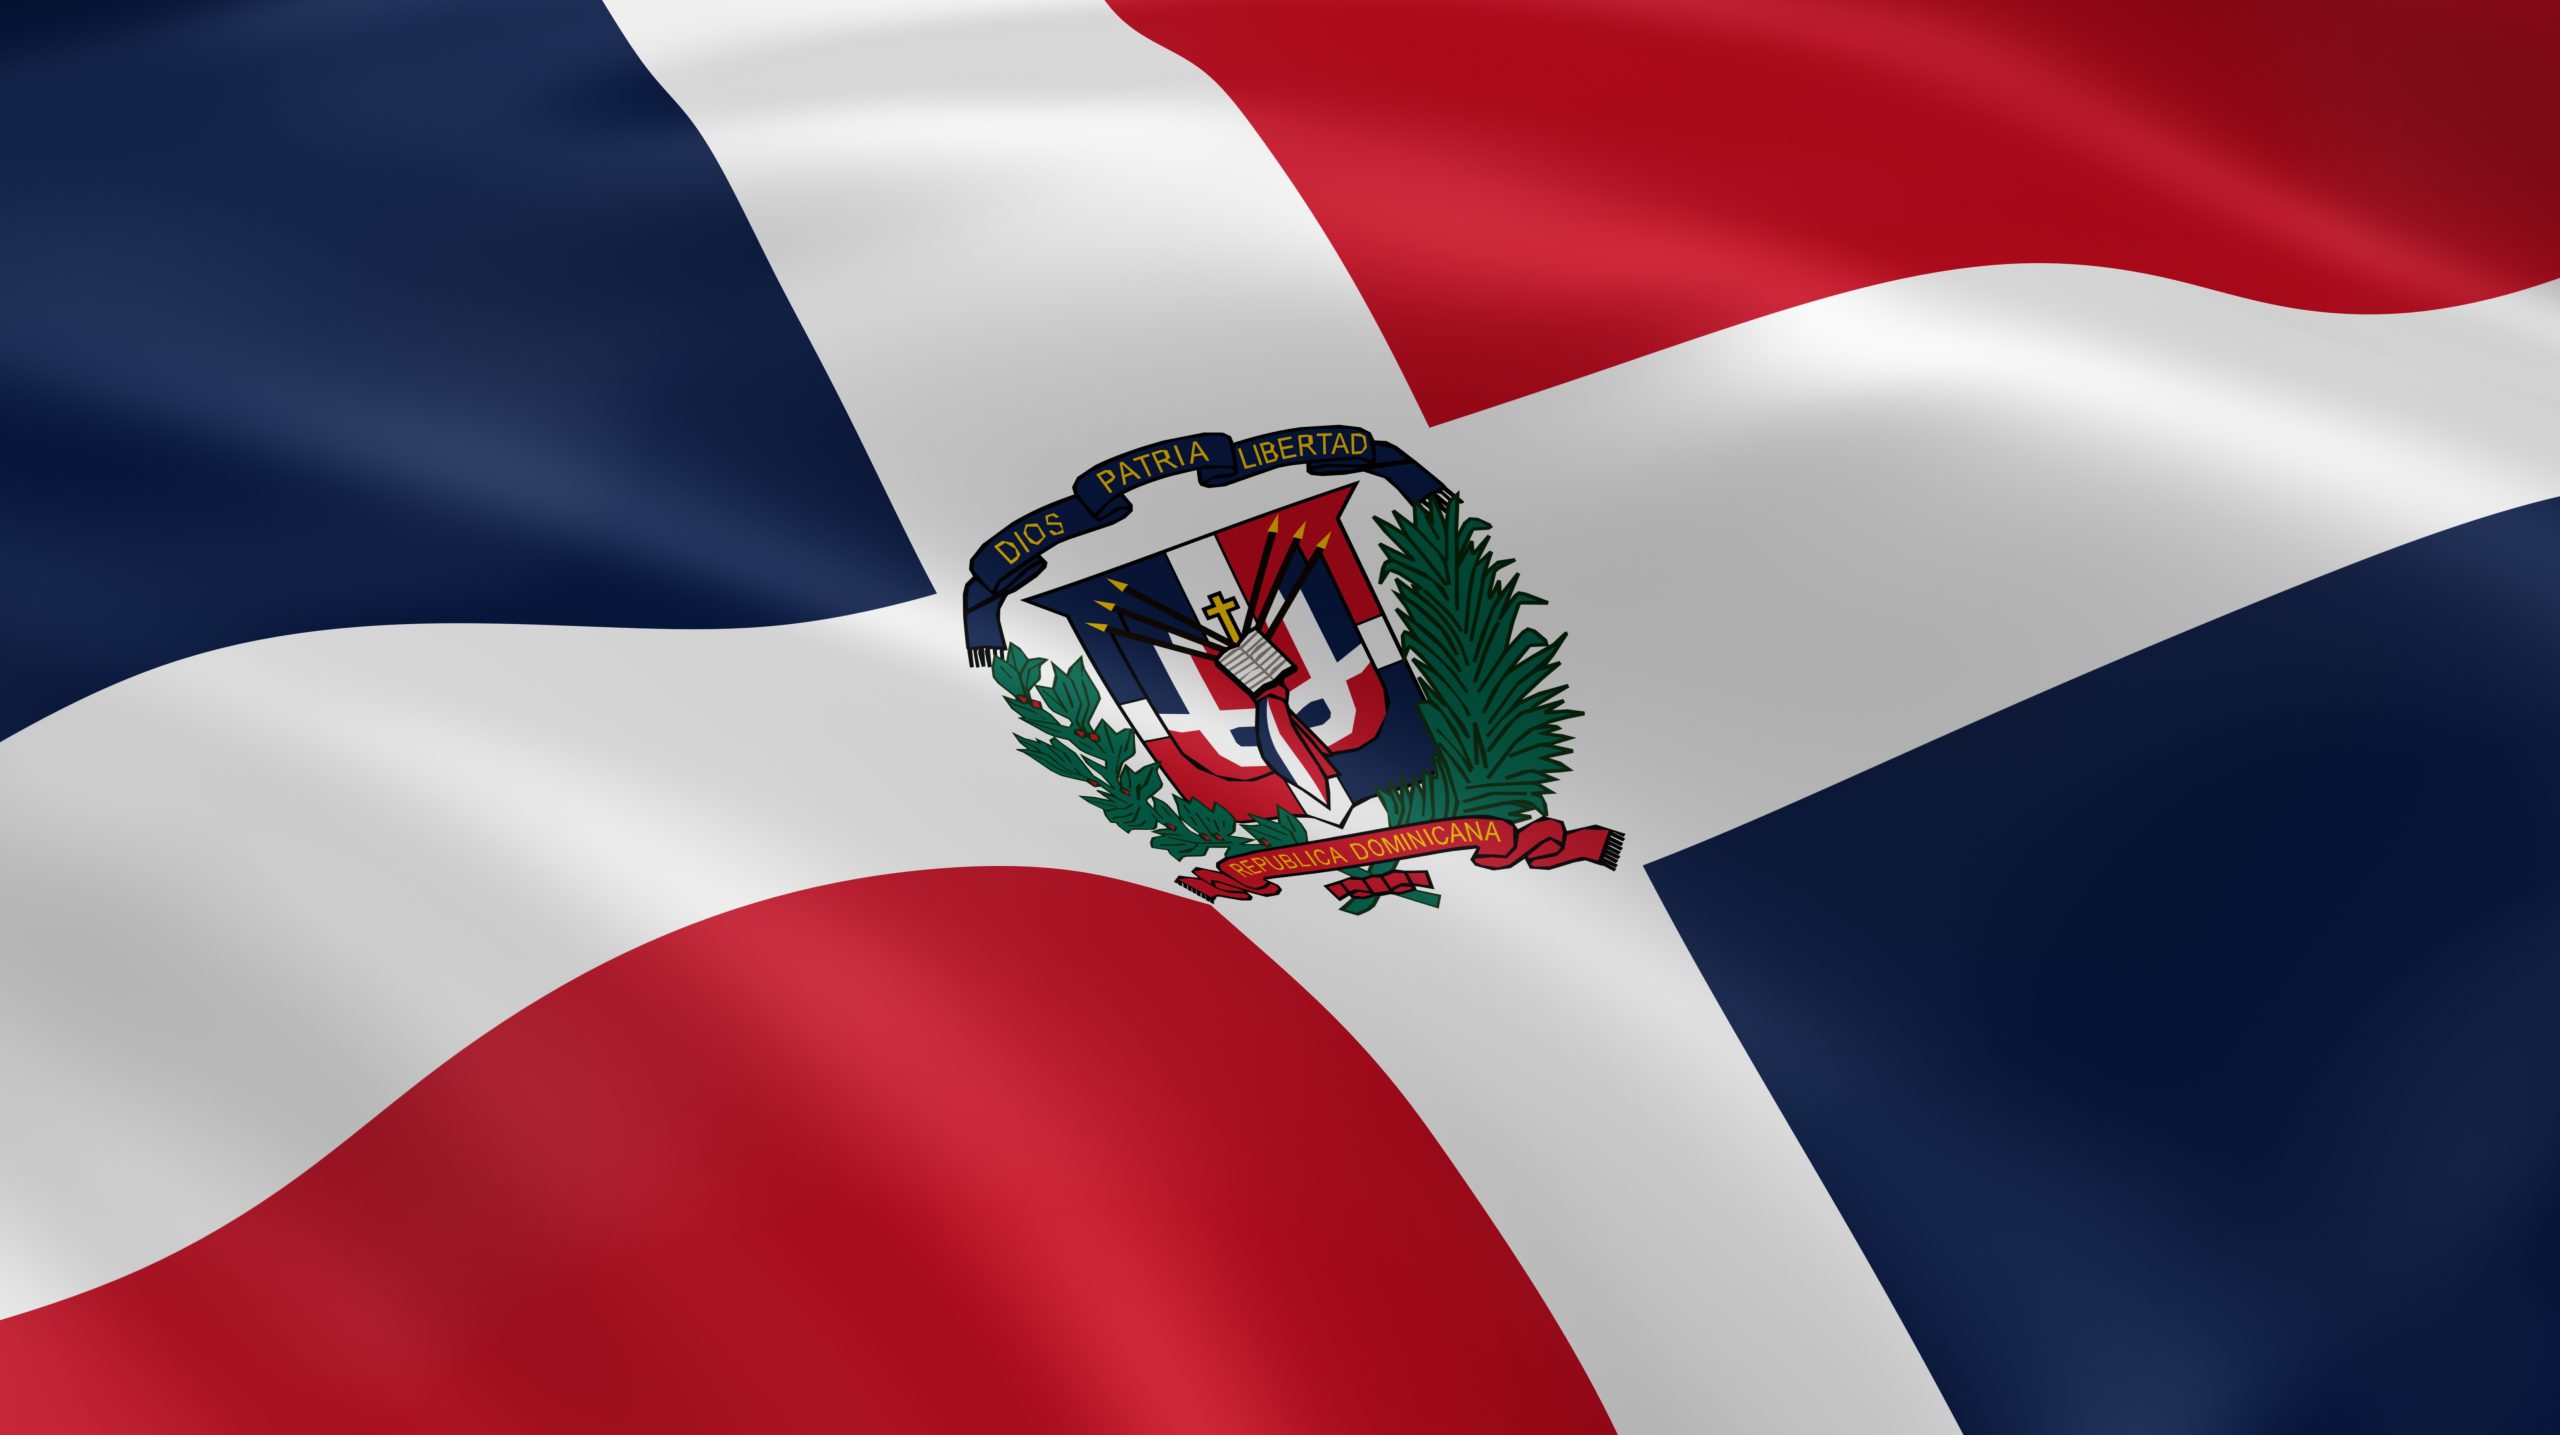 Republica Dominicana Flag Republica Dominicana The Pride Of The